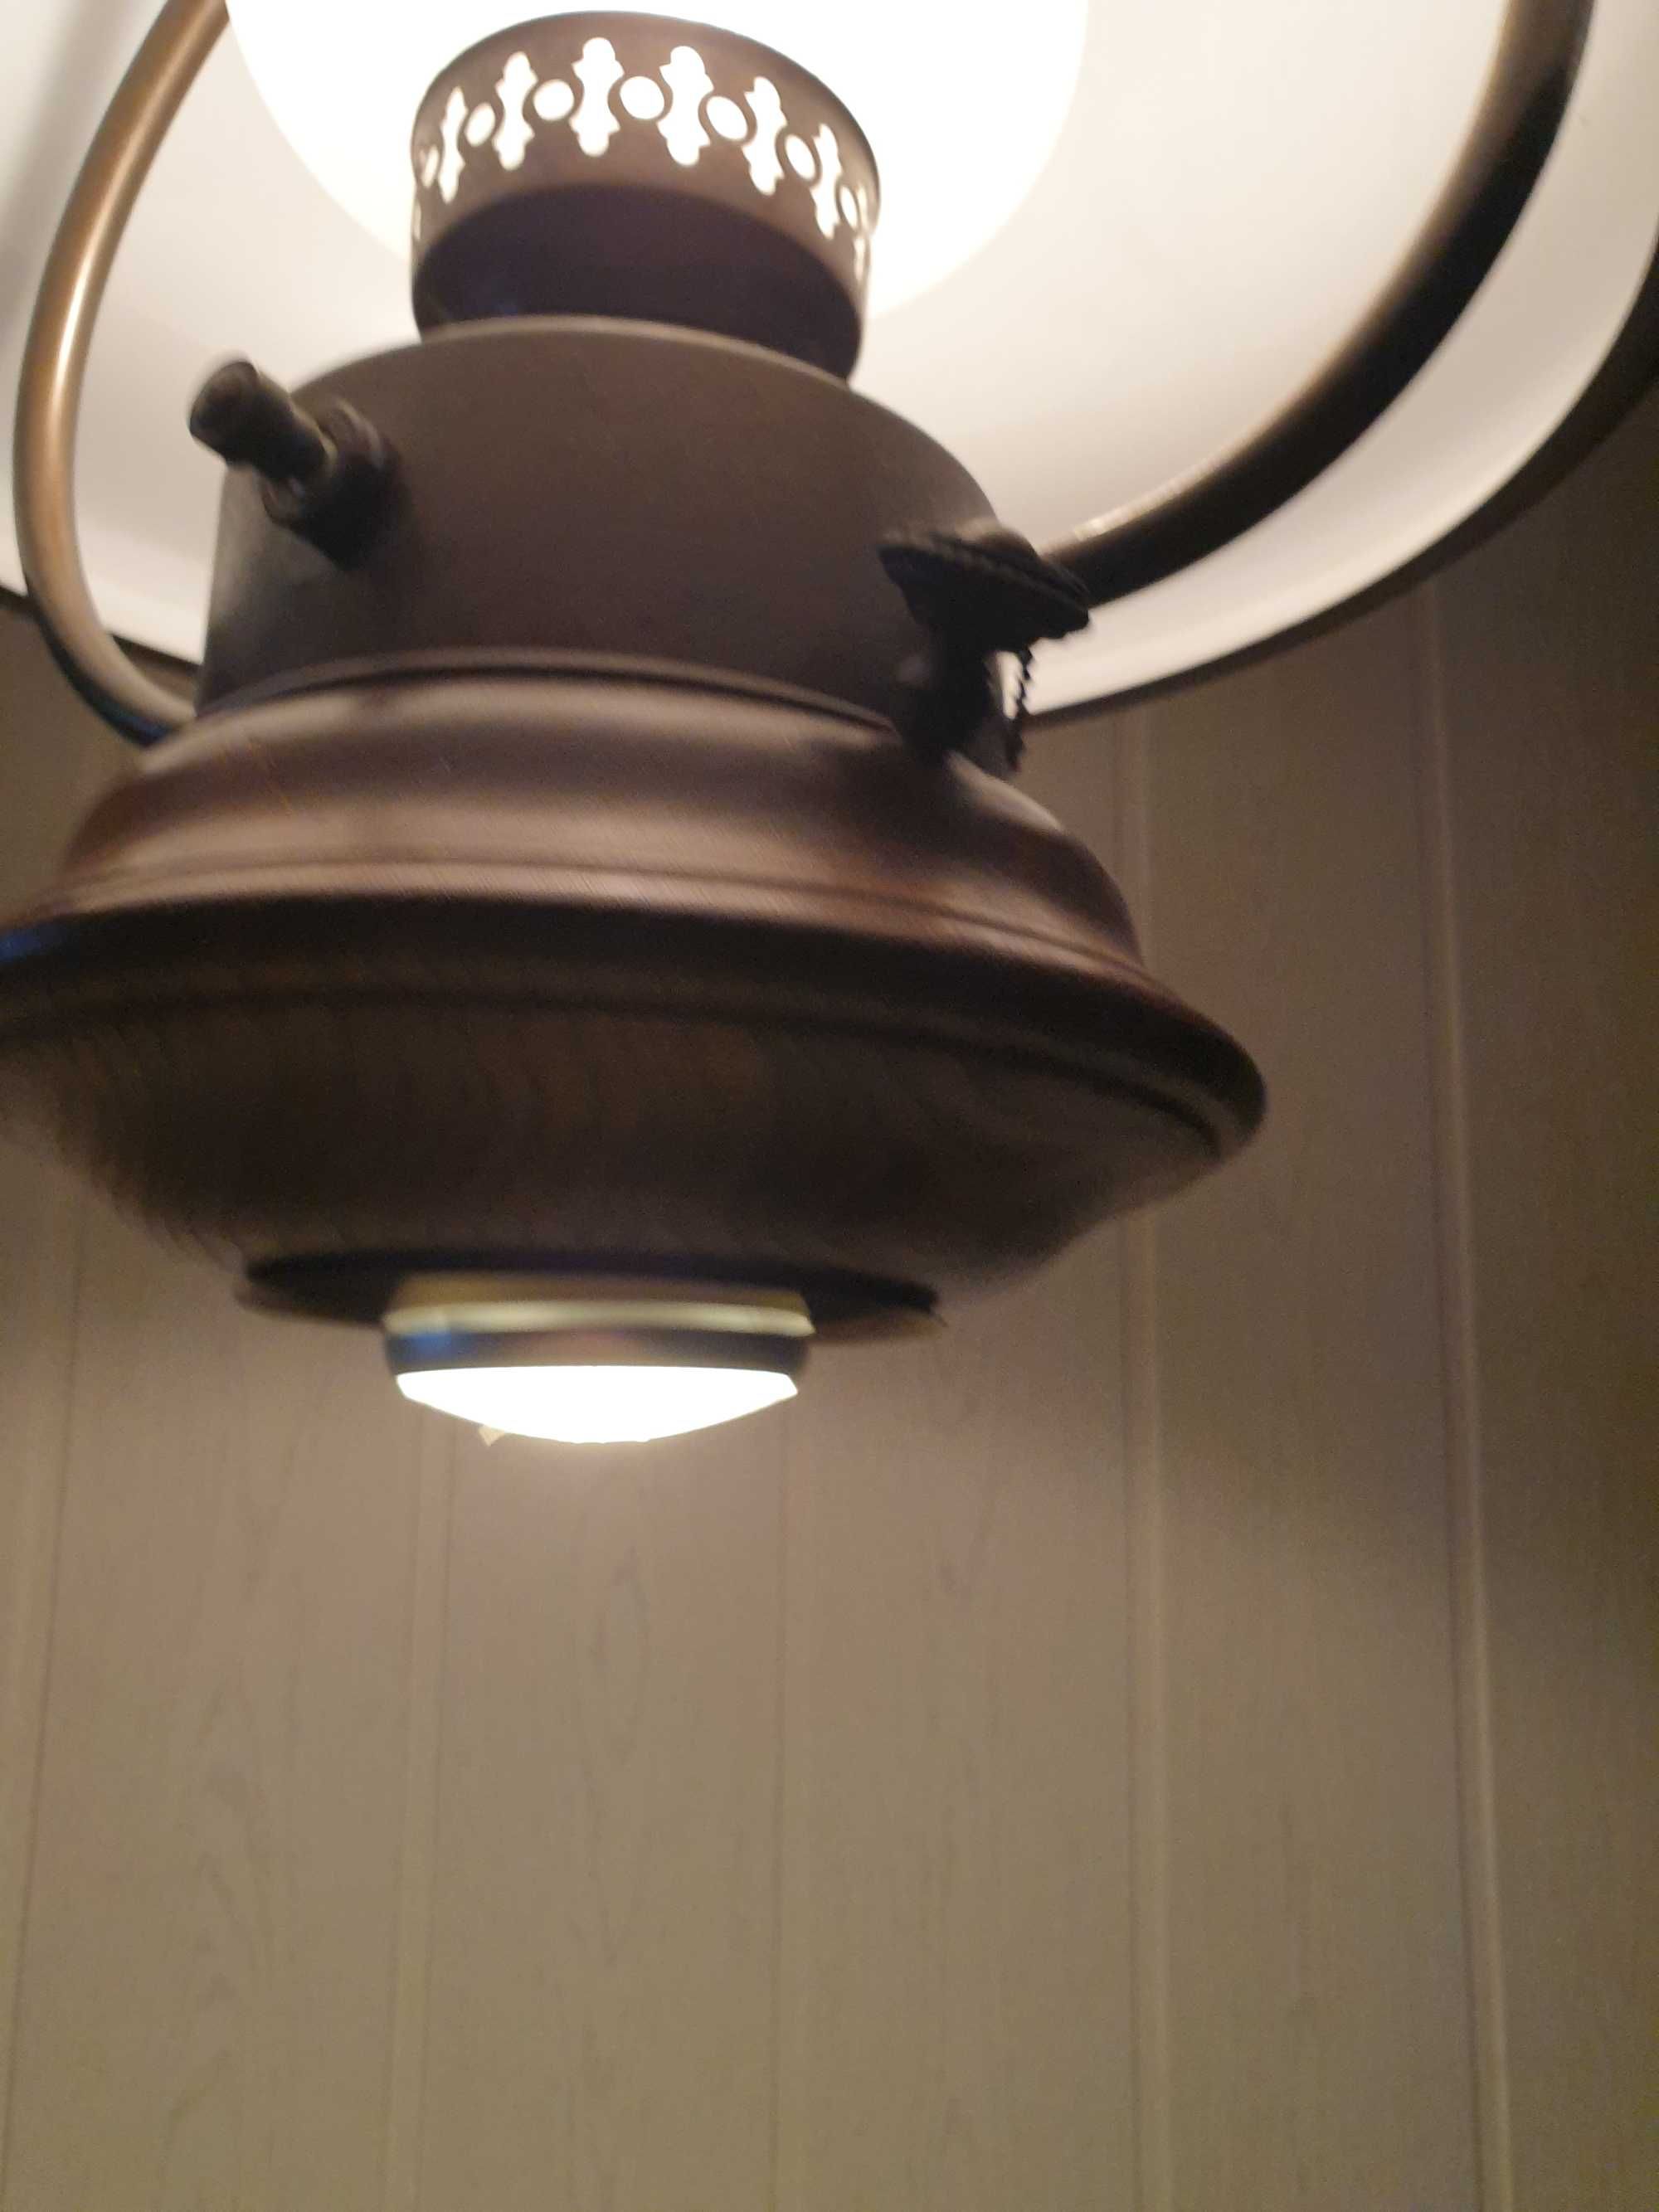 Lampa w stylu holenderskim 2 źródła światła